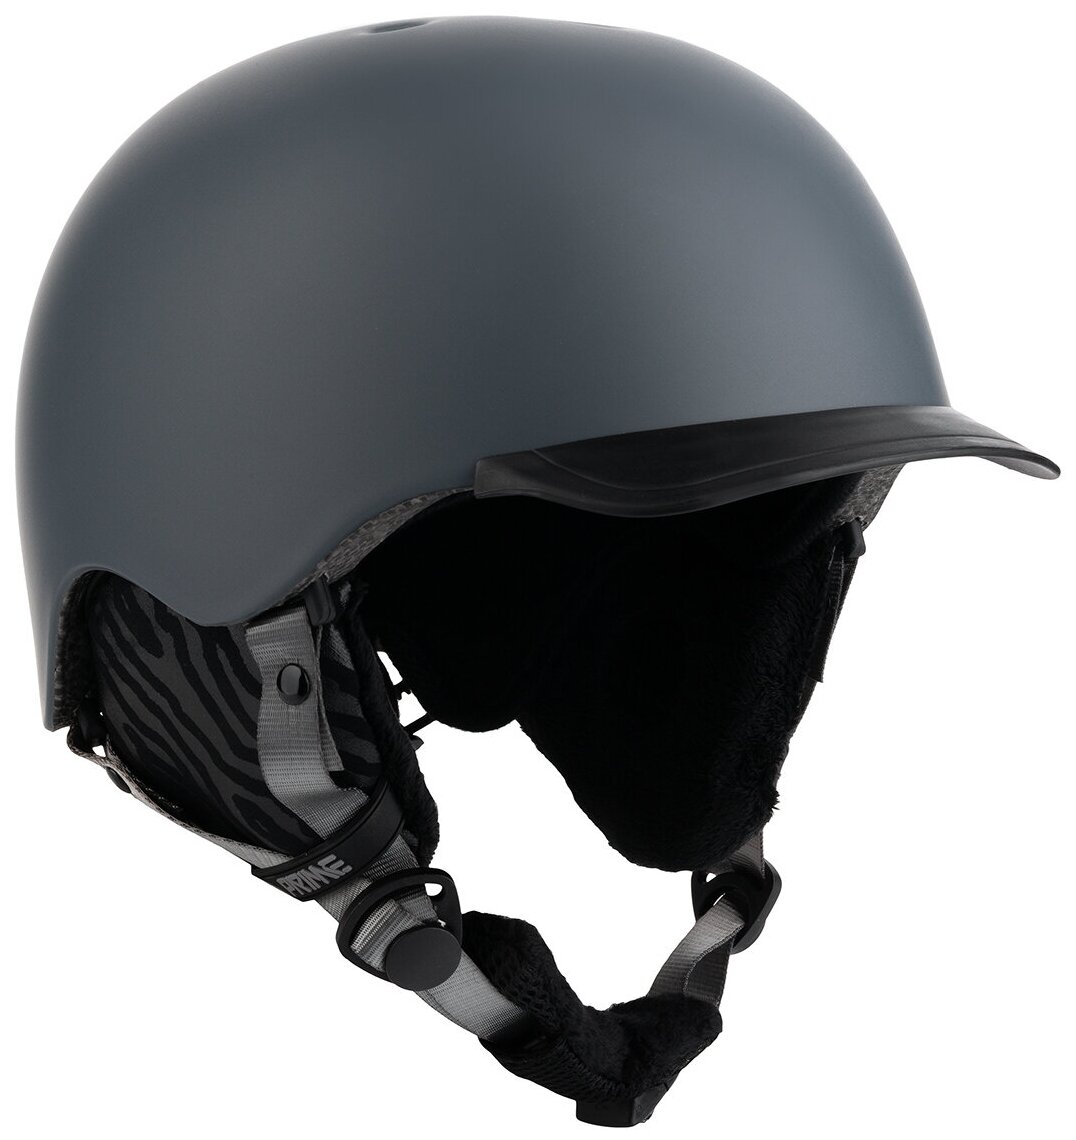 Шлем PRIME 2021-22 - COOL-C1 Grey, размер XL 61-63, цвет:Серый